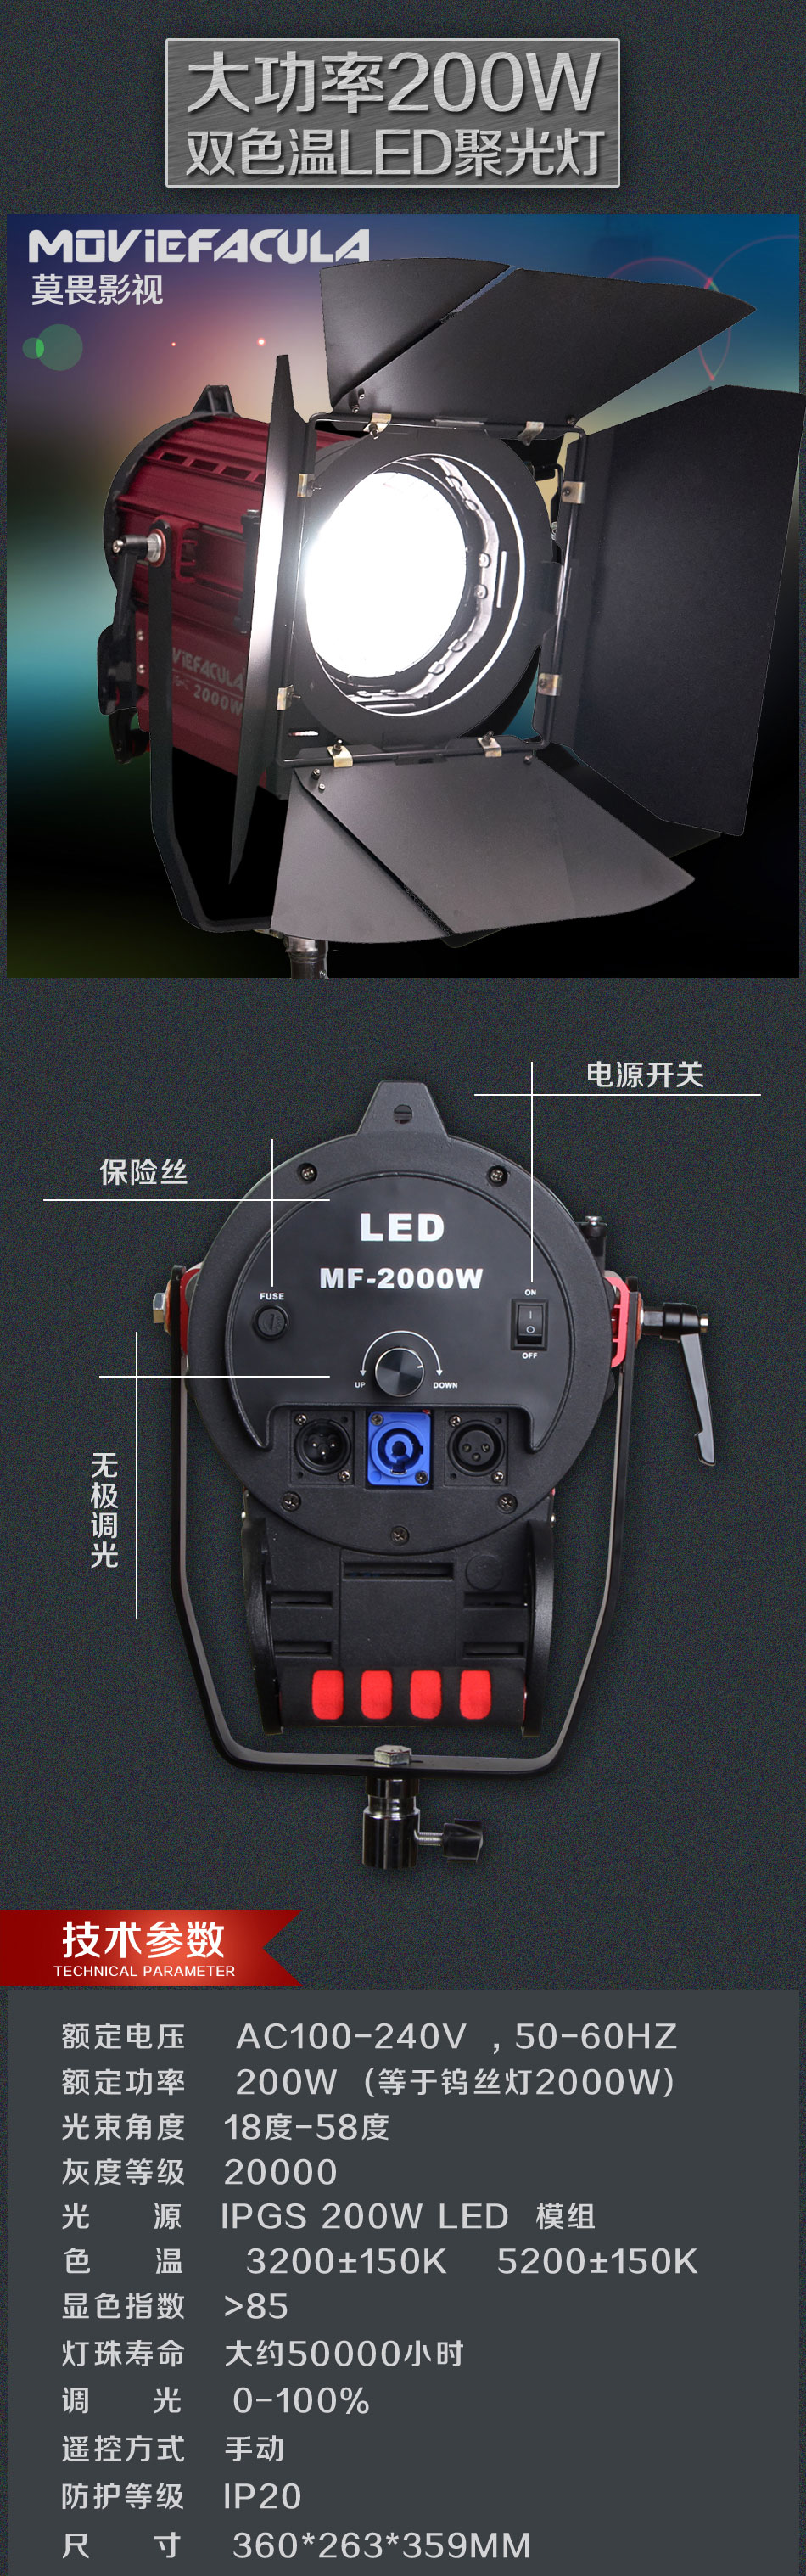 200W 影视LED聚光灯1.jpg